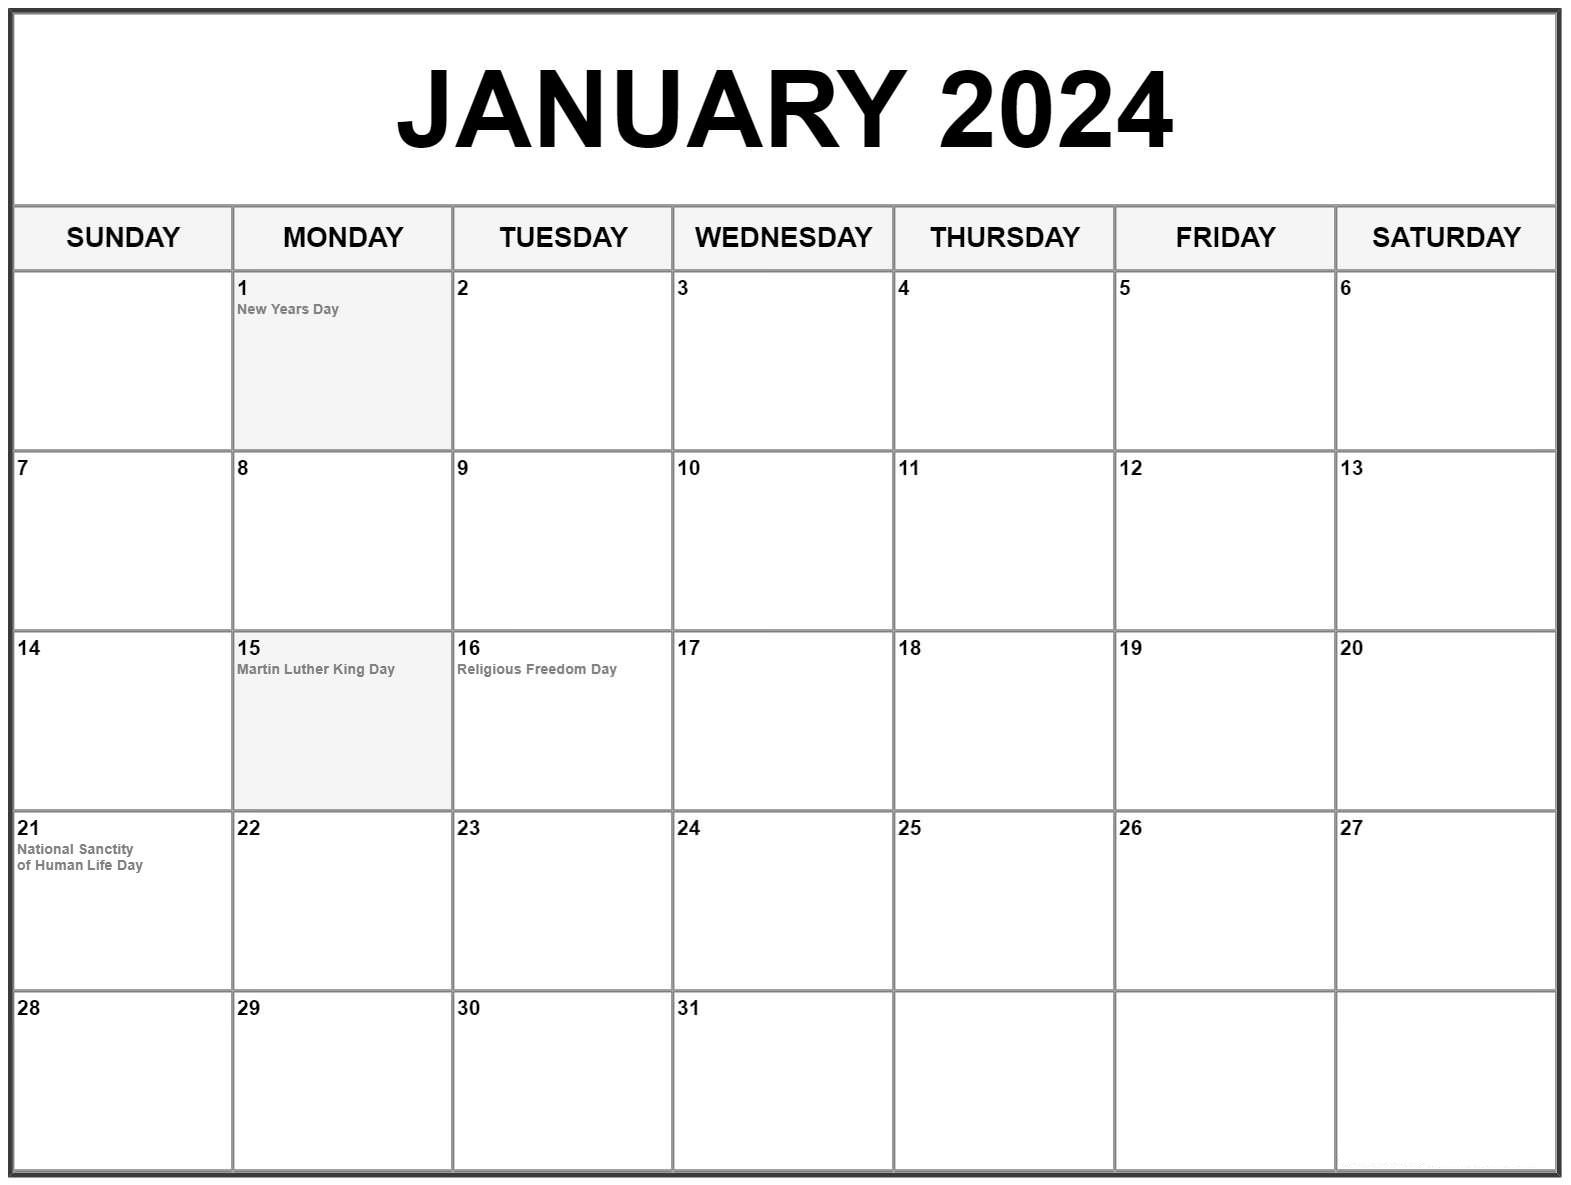 January 2024 calendar landscape orientation